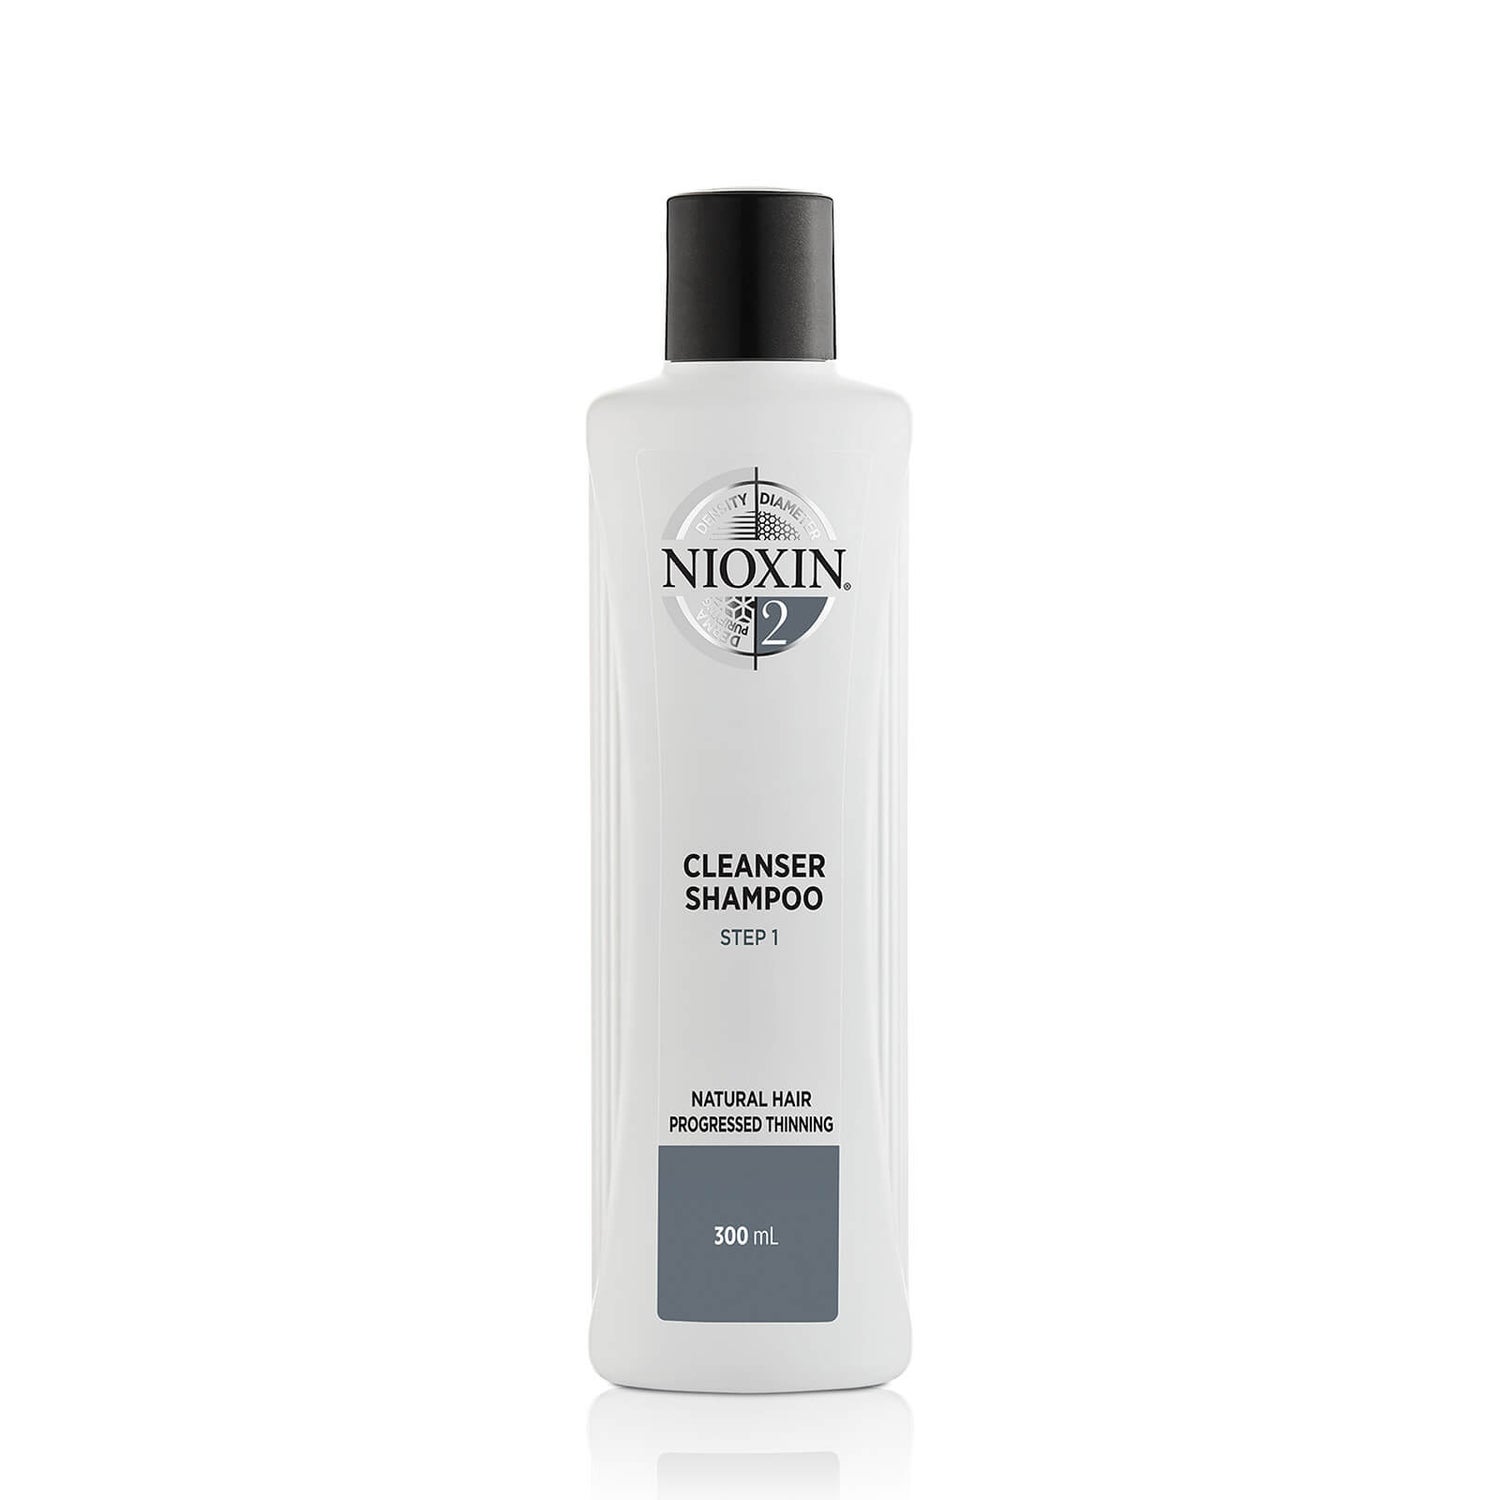 NIOXIN třídílný čisticí šampon System 2 pro přírodní vlasy s postupným řídnutím 300 ml